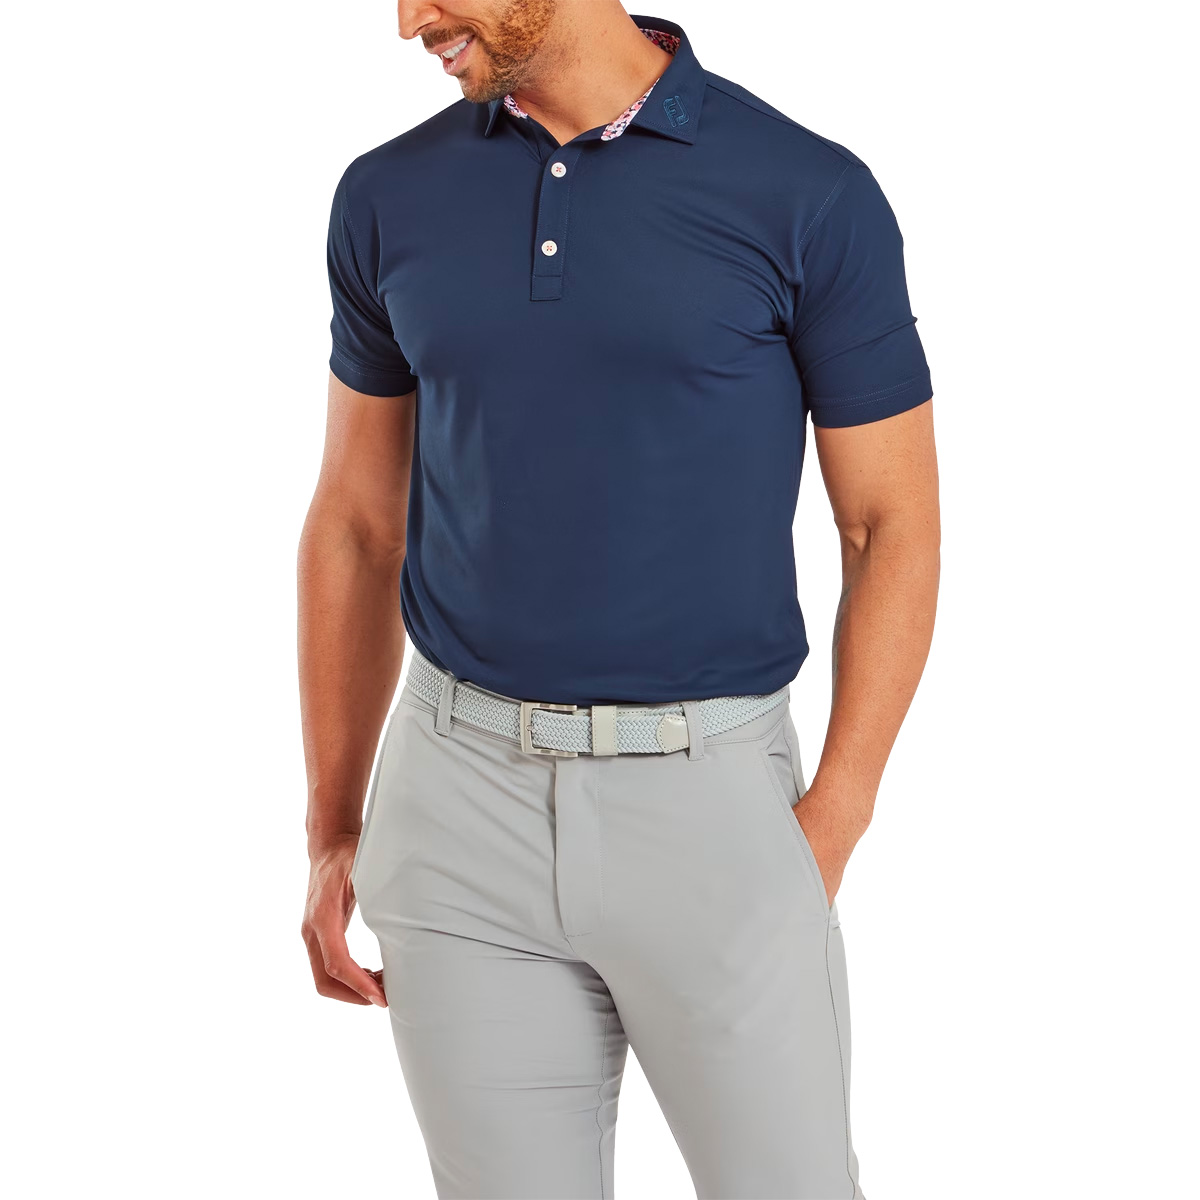 FootJoy EU Solid with Primrose Trim Mens Golf Polo Shirt 